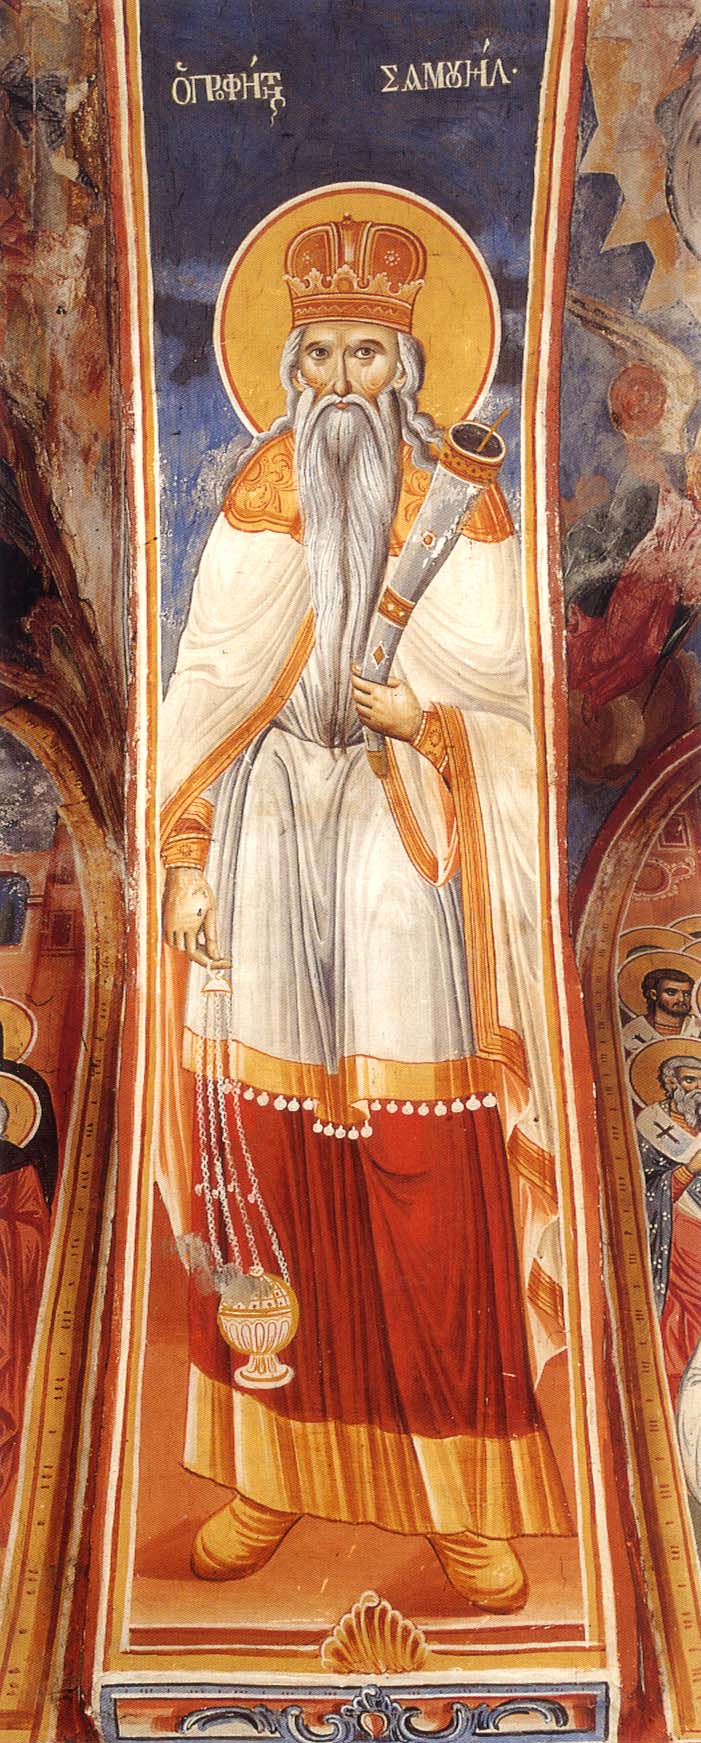 Ο προφήτης Σαμουήλ. Τοιχογραφία από τον πρόναο του παρεκκλησίου του αγίου Νικολάου στην Ιερά Μεγίστη Μονή Βατοπαιδίου.